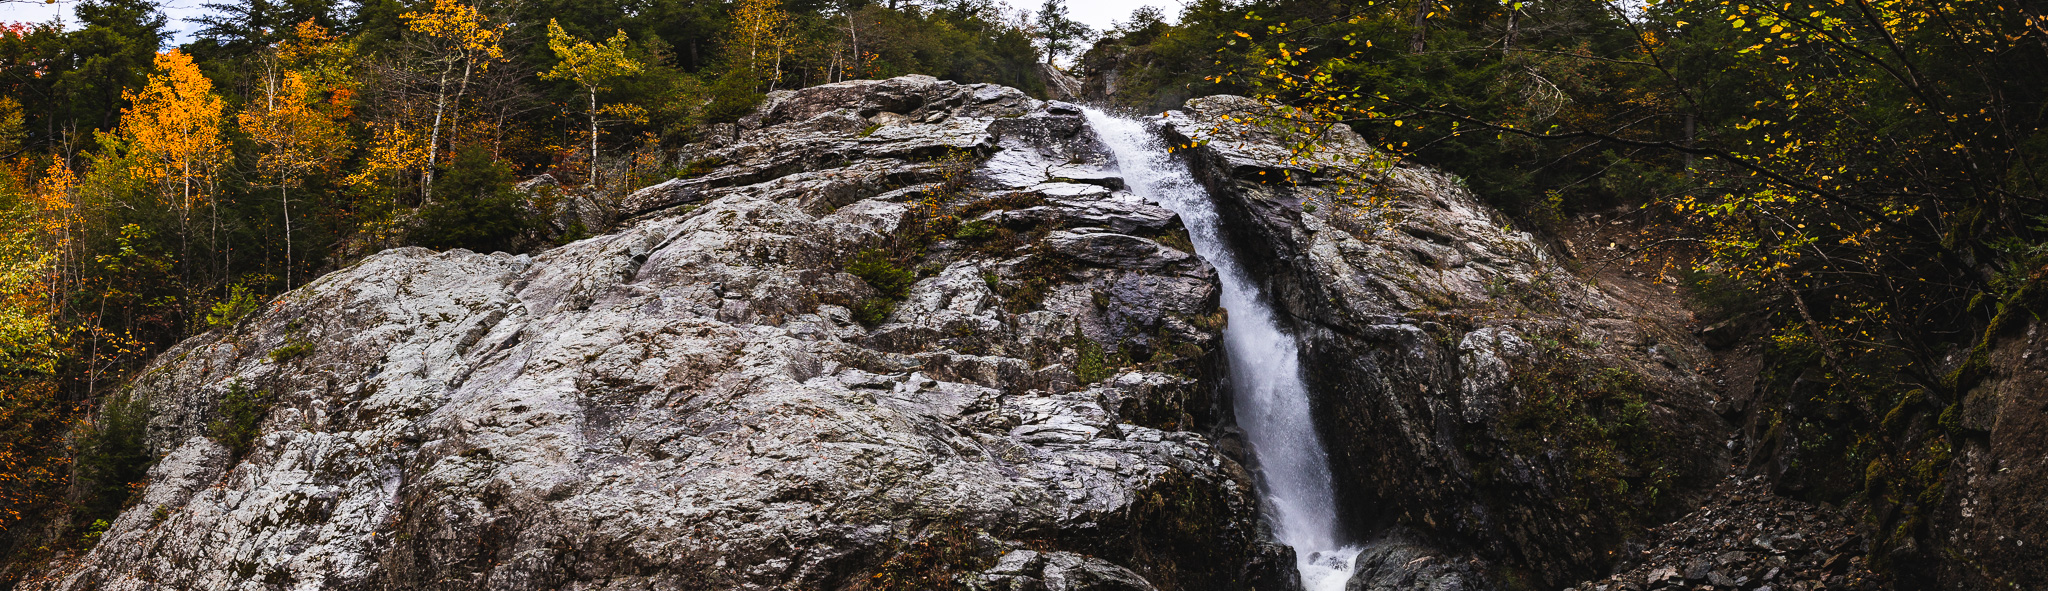 Panorama of Roaring Brook Falls